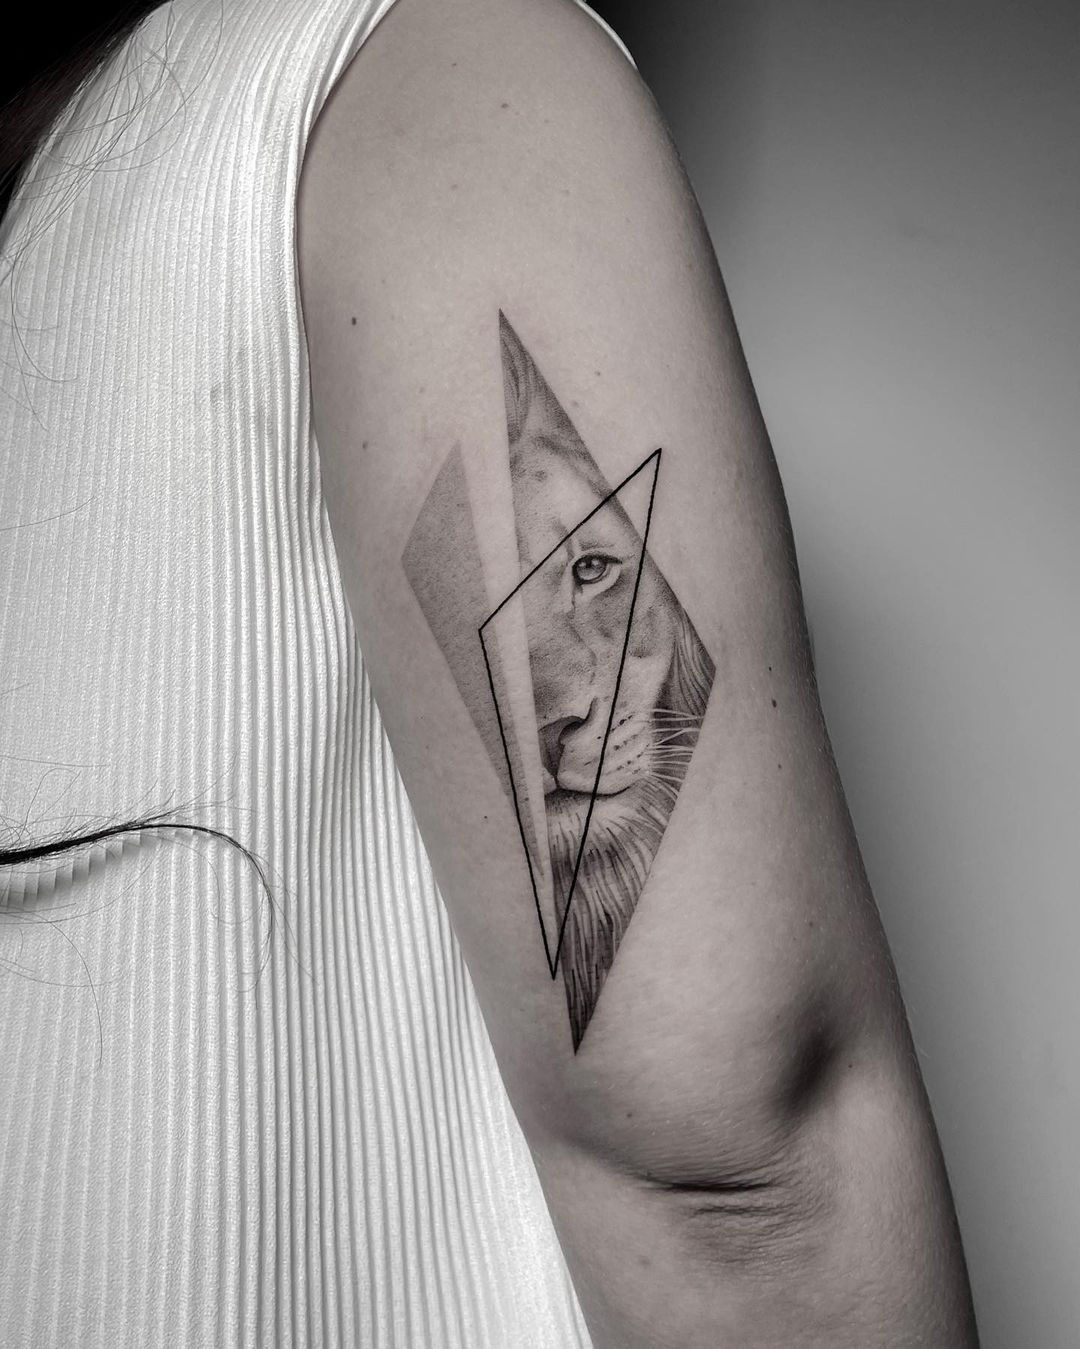 Skull+Triangle+eye+tattoo by MarioHiga on DeviantArt